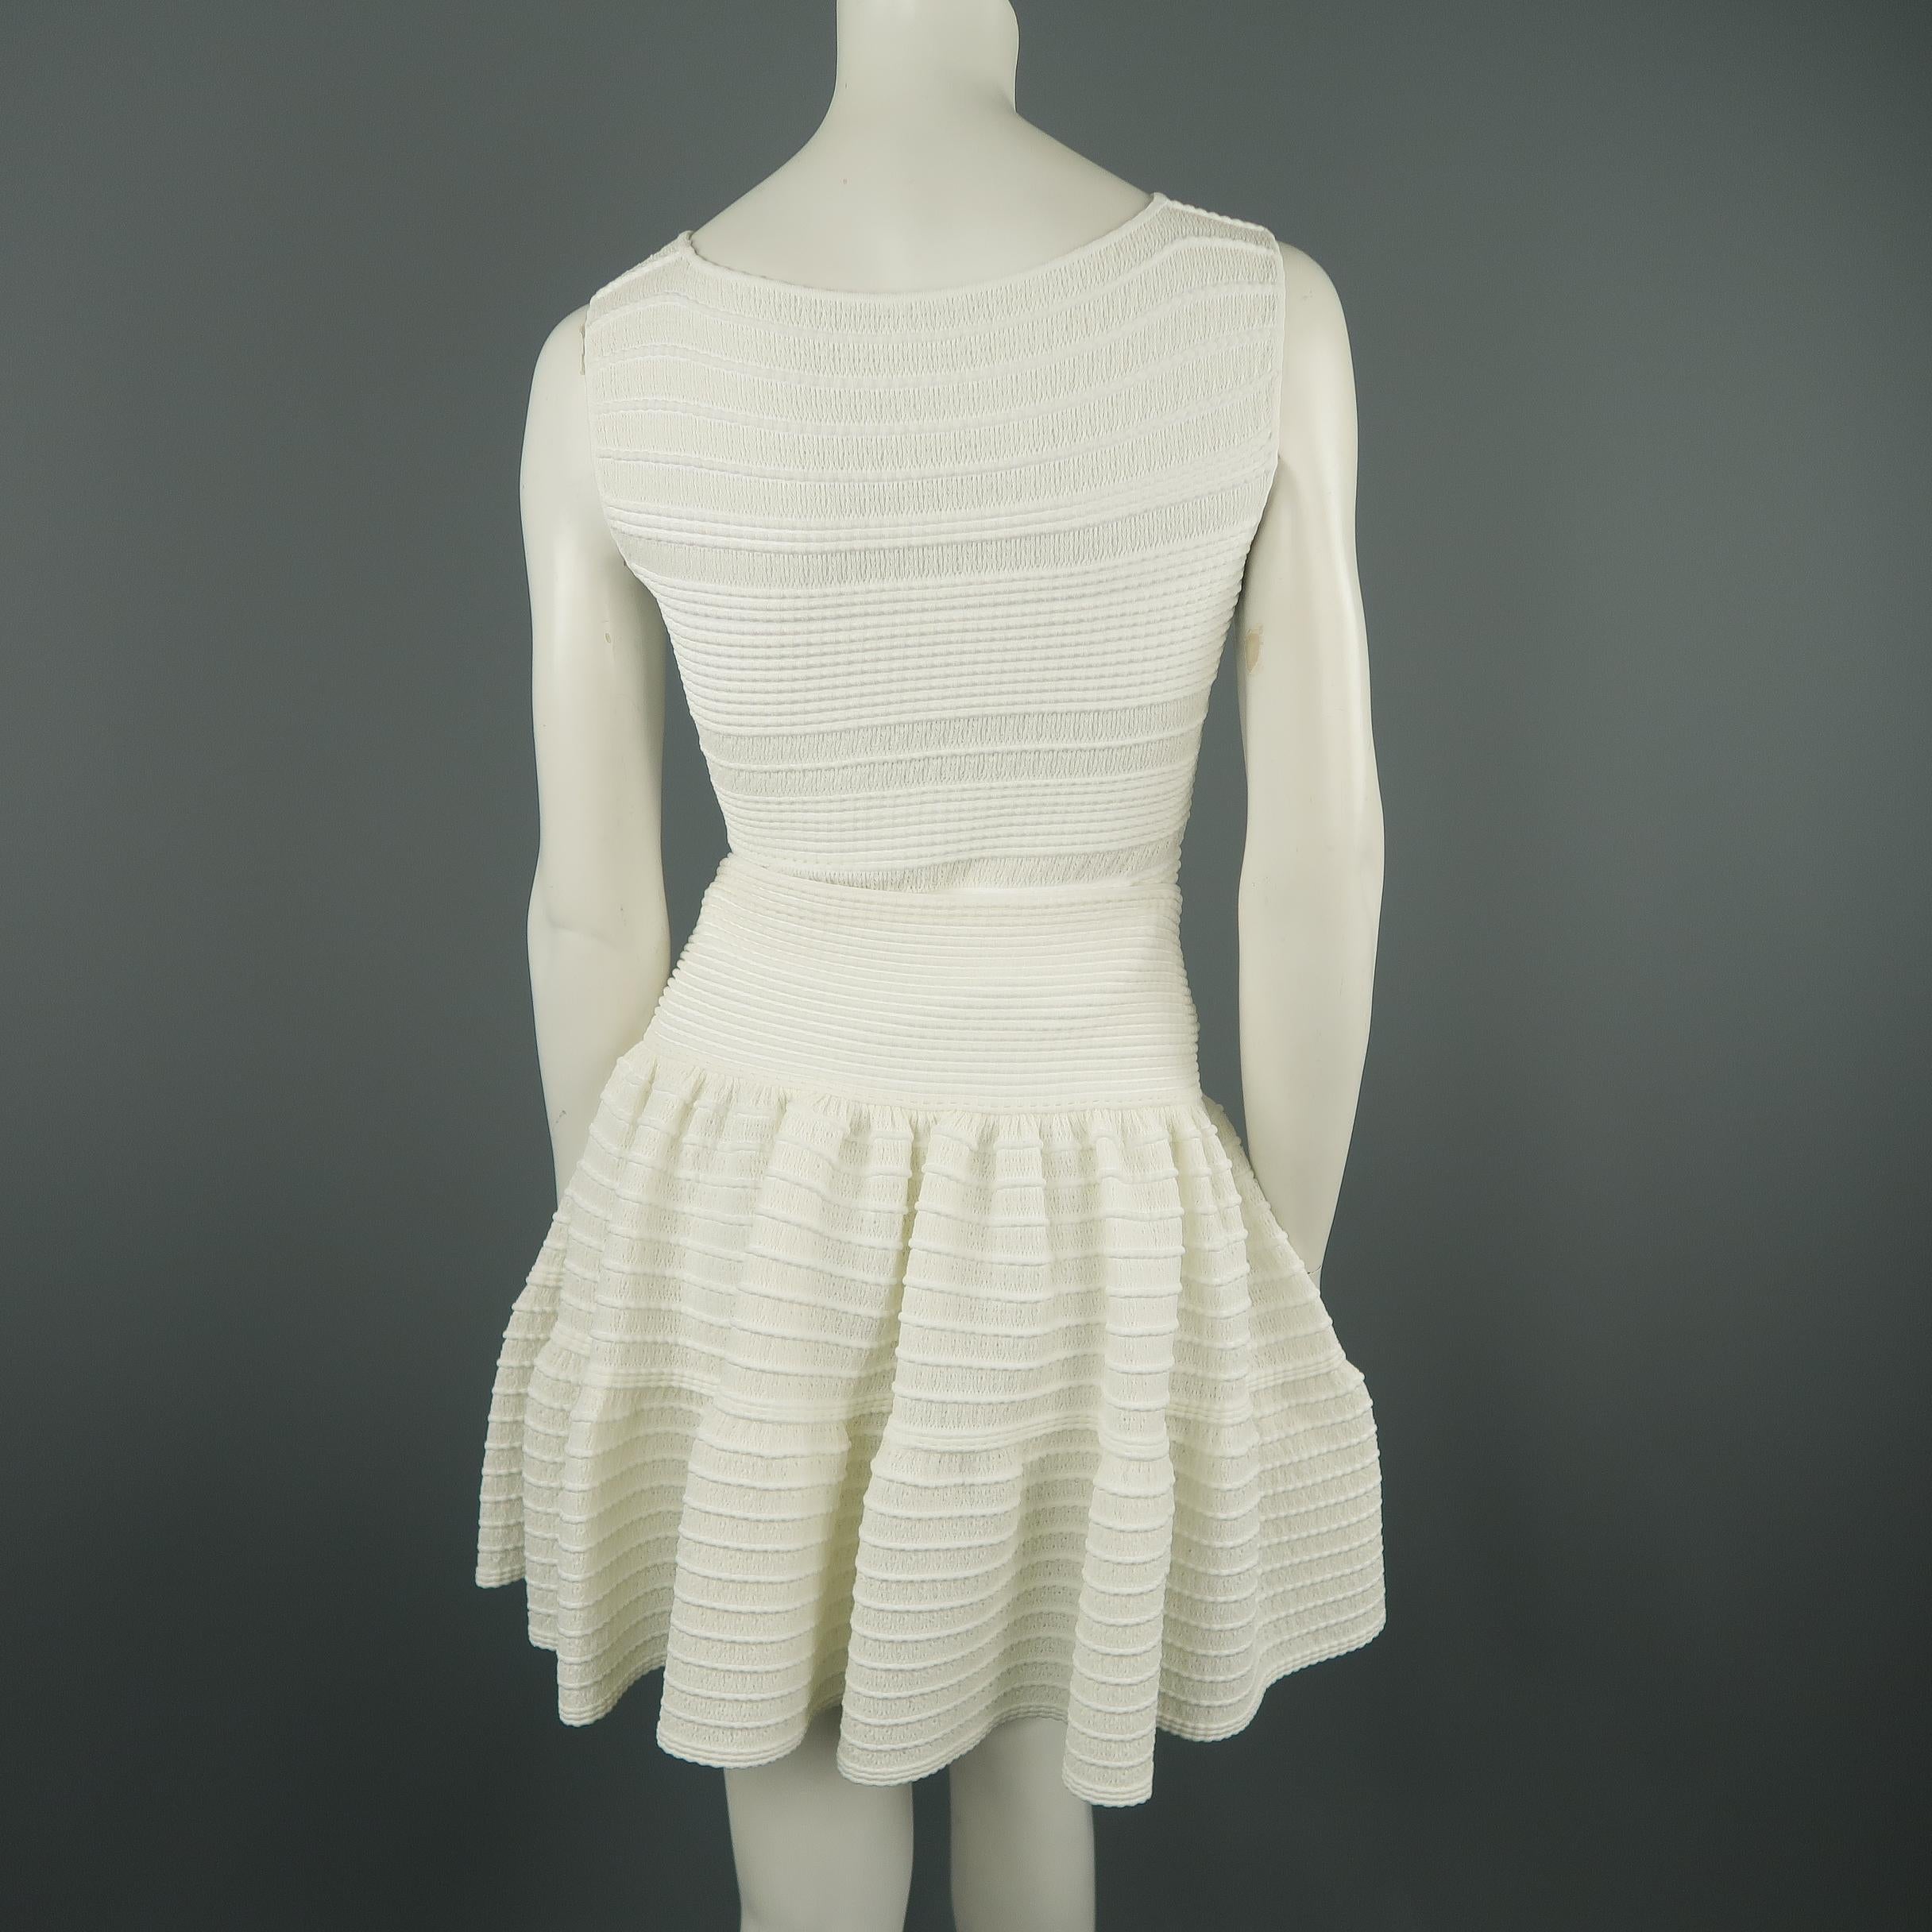 ALAIA Size S White Textured Knit Sleeveless Top & Skirt Set 3